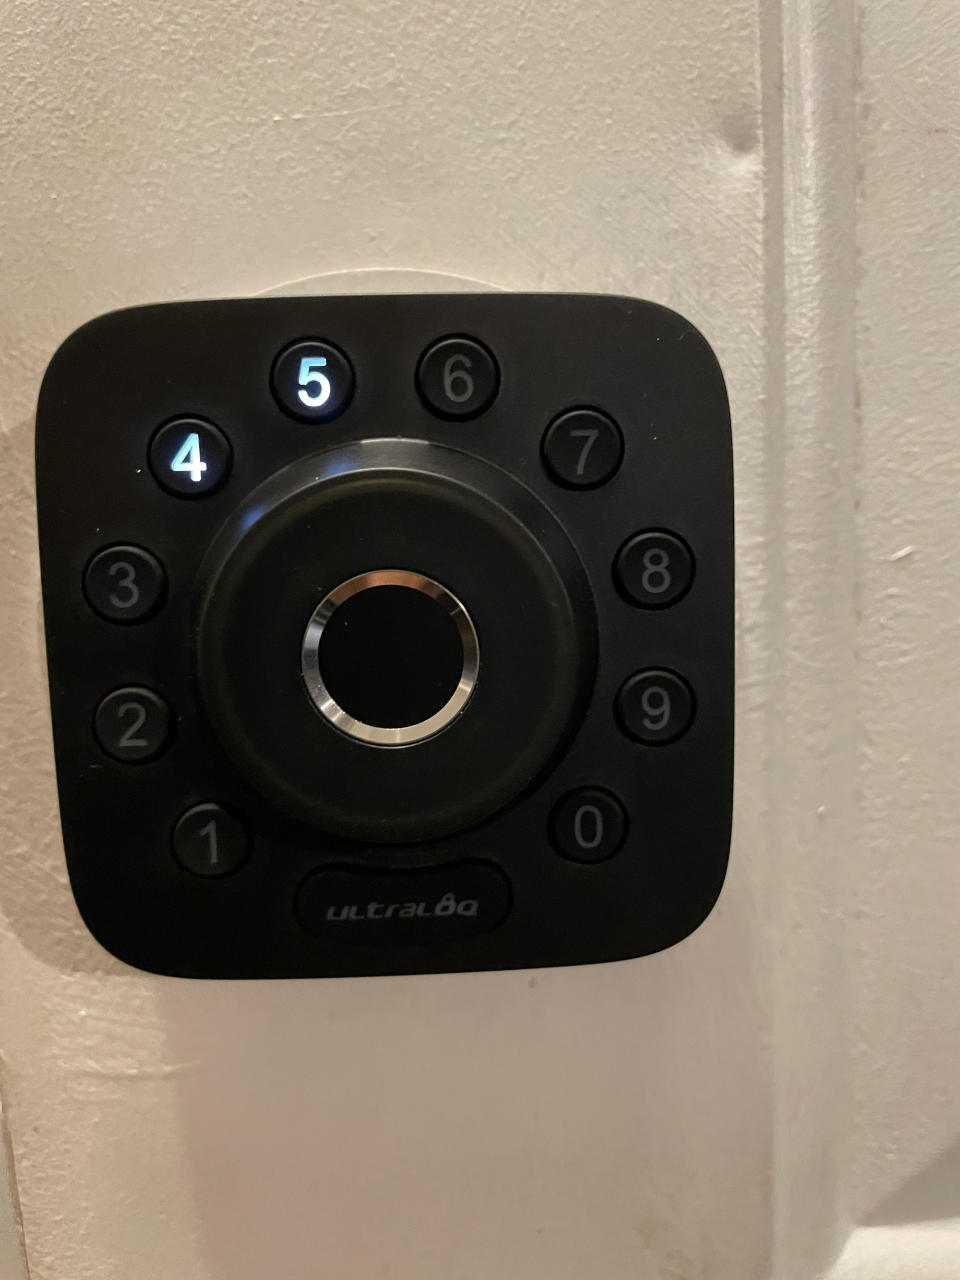 U-bolt mounted to door, smart locks